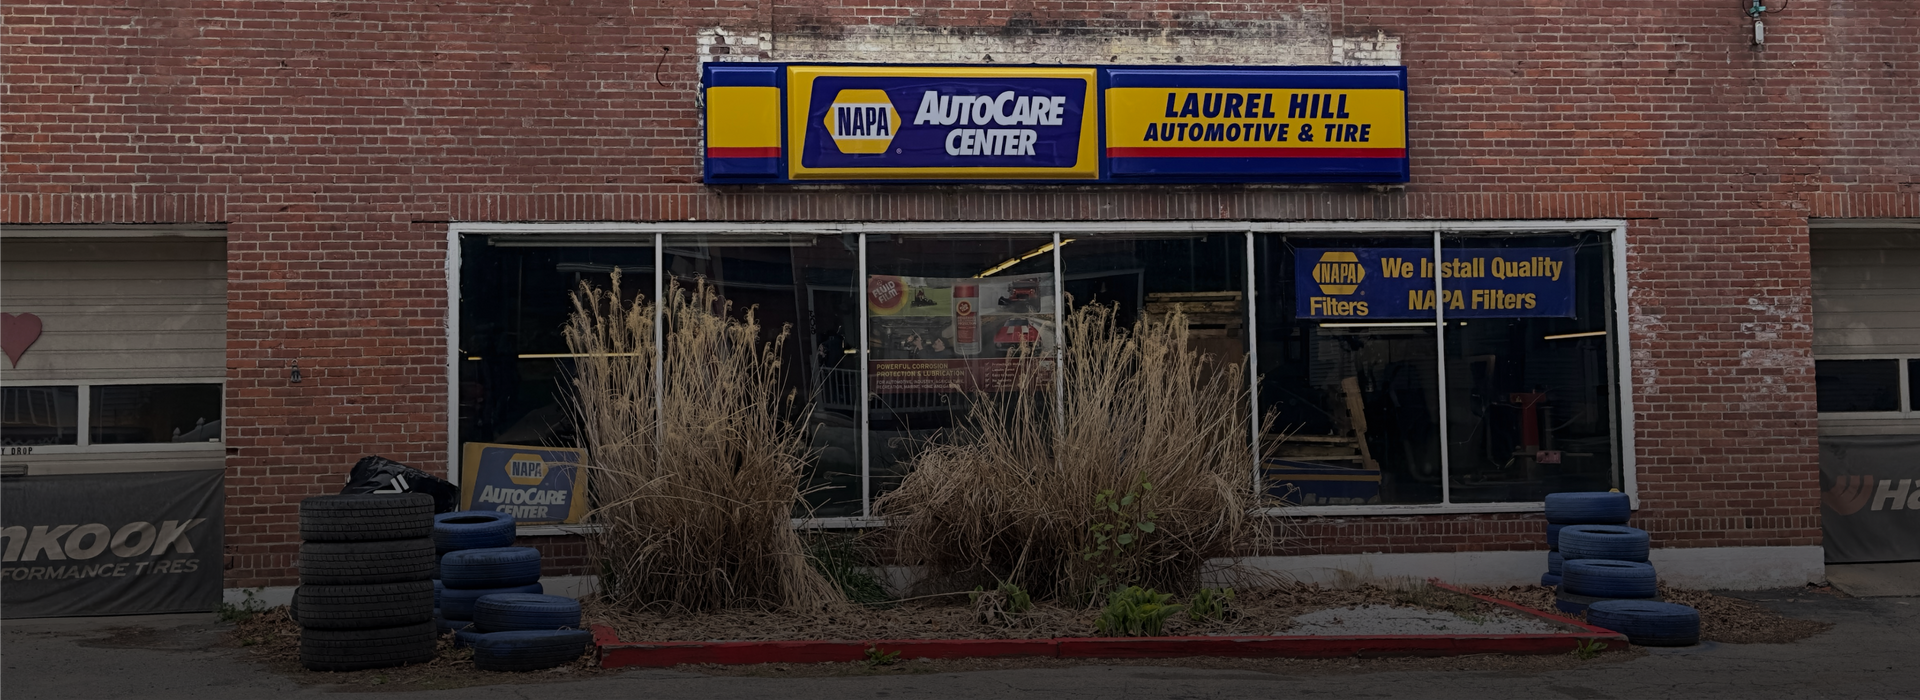 Shop Front | Laurel Hill Automotive & Tire